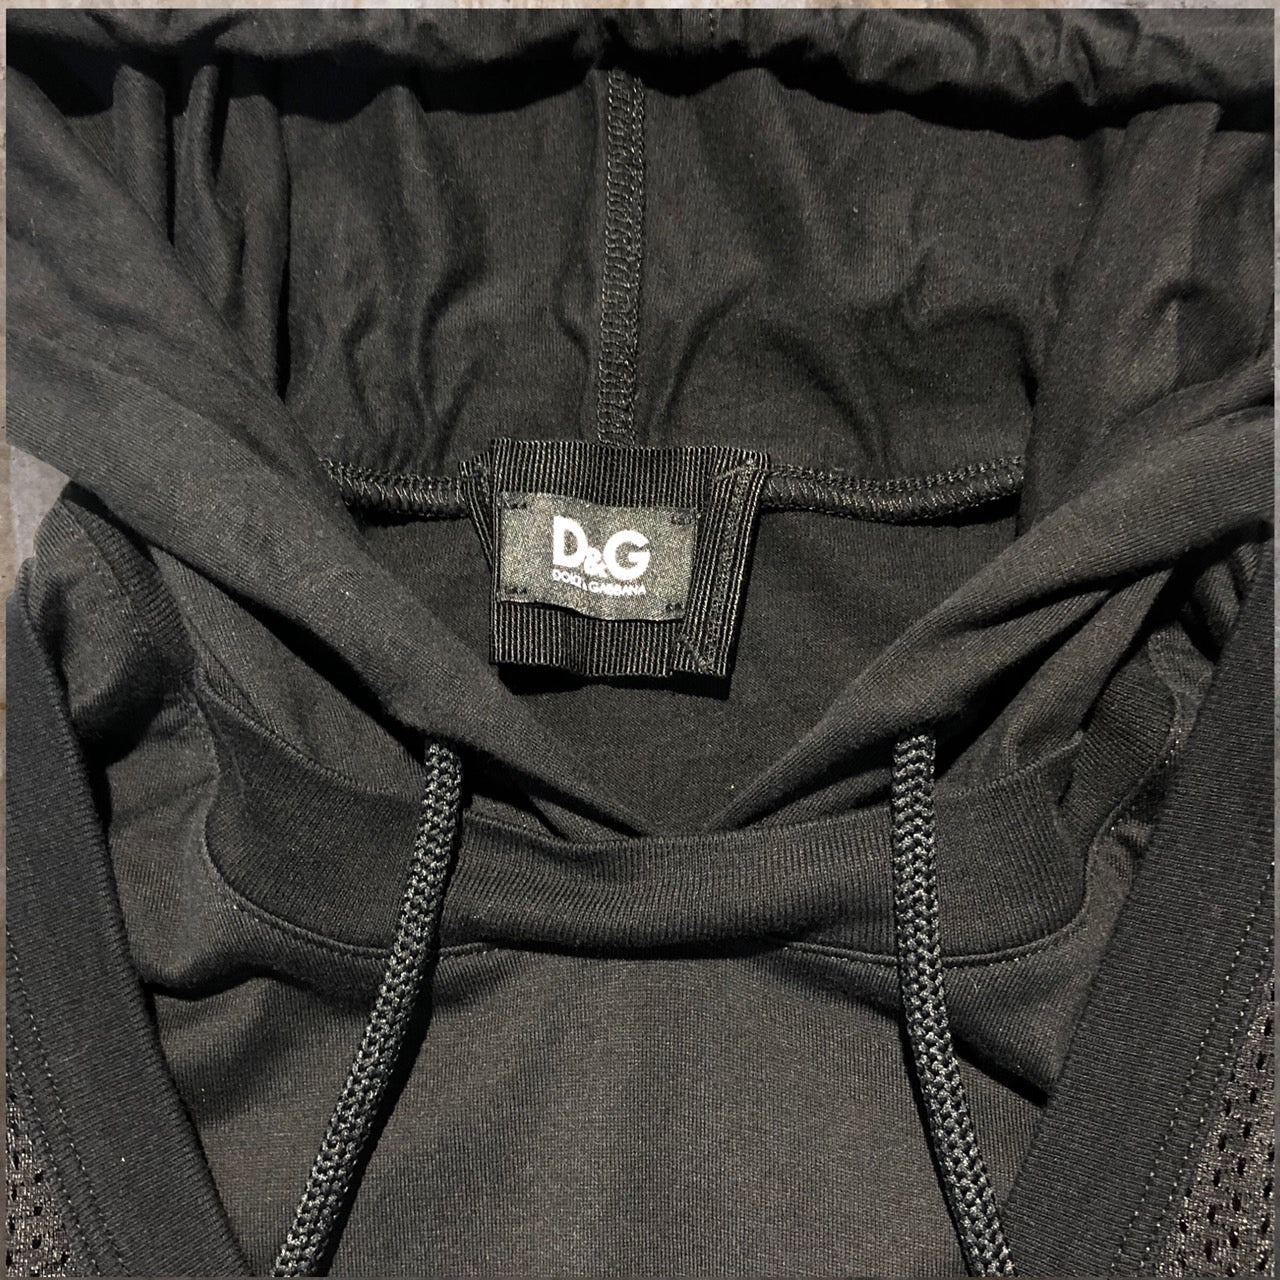 D&G(ディー&ジードルガバドルチェ&ガッバーナ) ゲームシャツドッキングS/Sフーディ 46(Mサイズ程度) ブラック